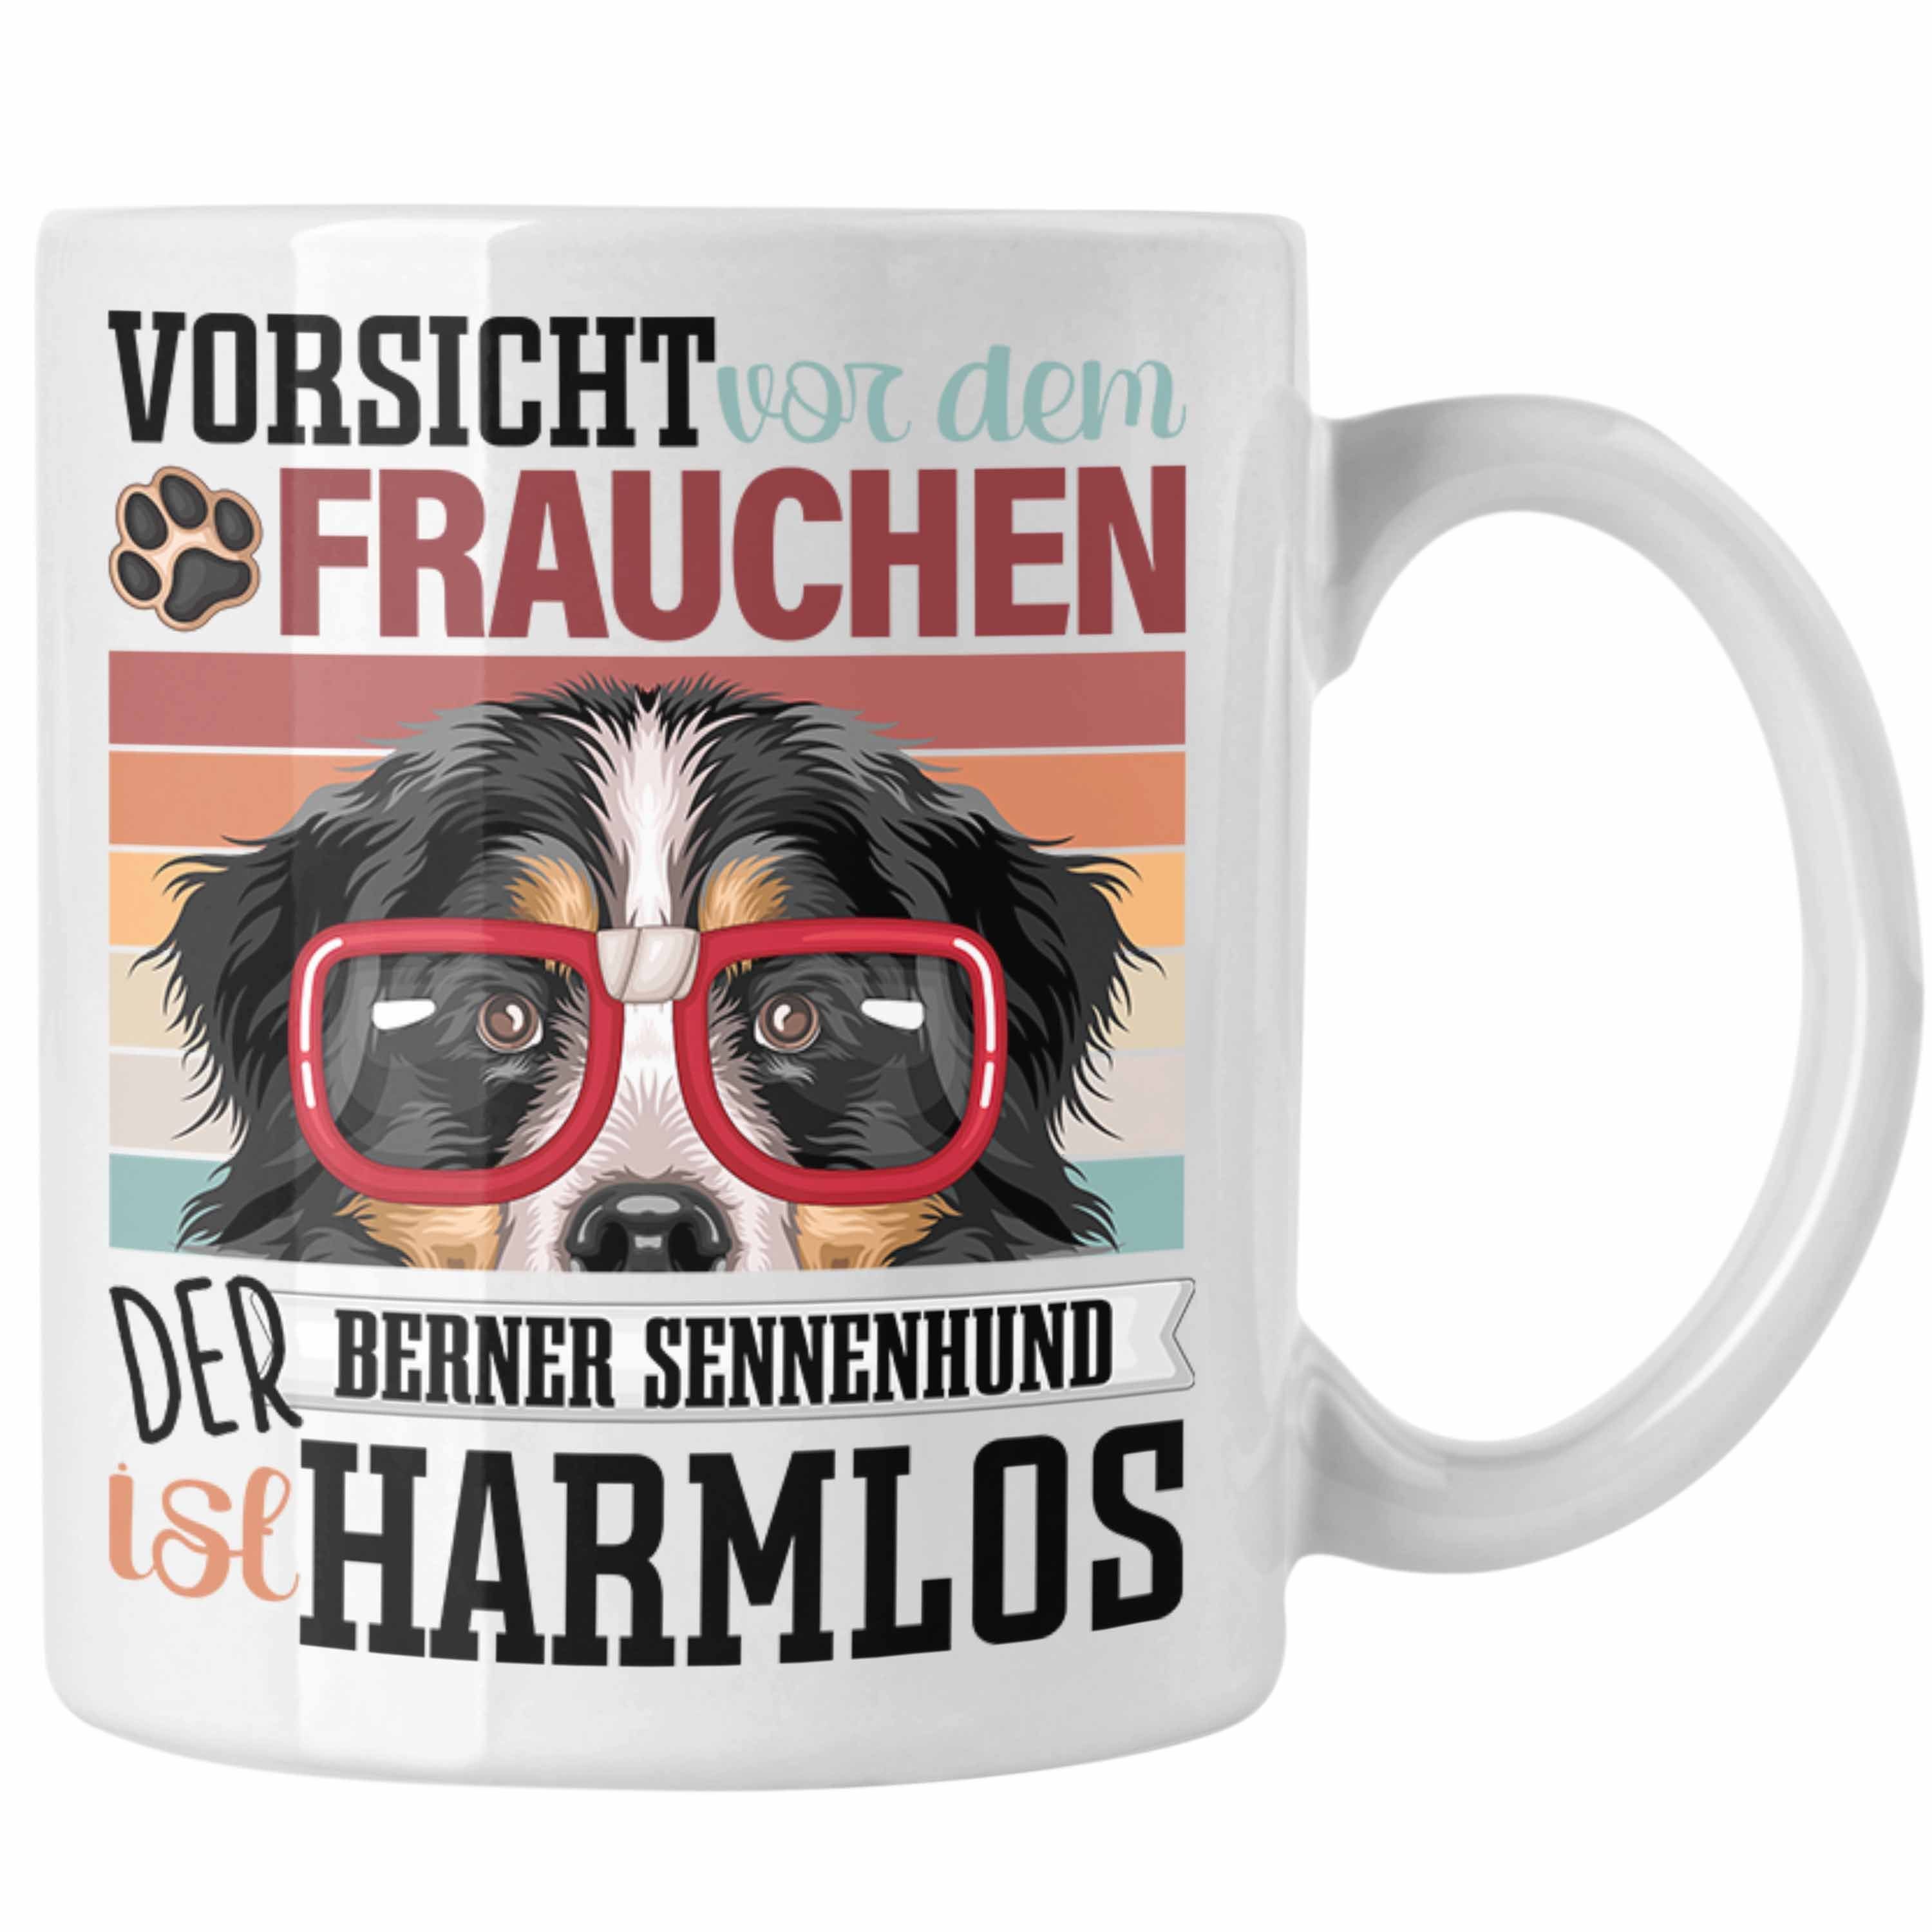 Weiss Trendation Berner Tasse Sennen Gesch Besitzerin Geschenk Frauchen Spruch Tasse Lustiger